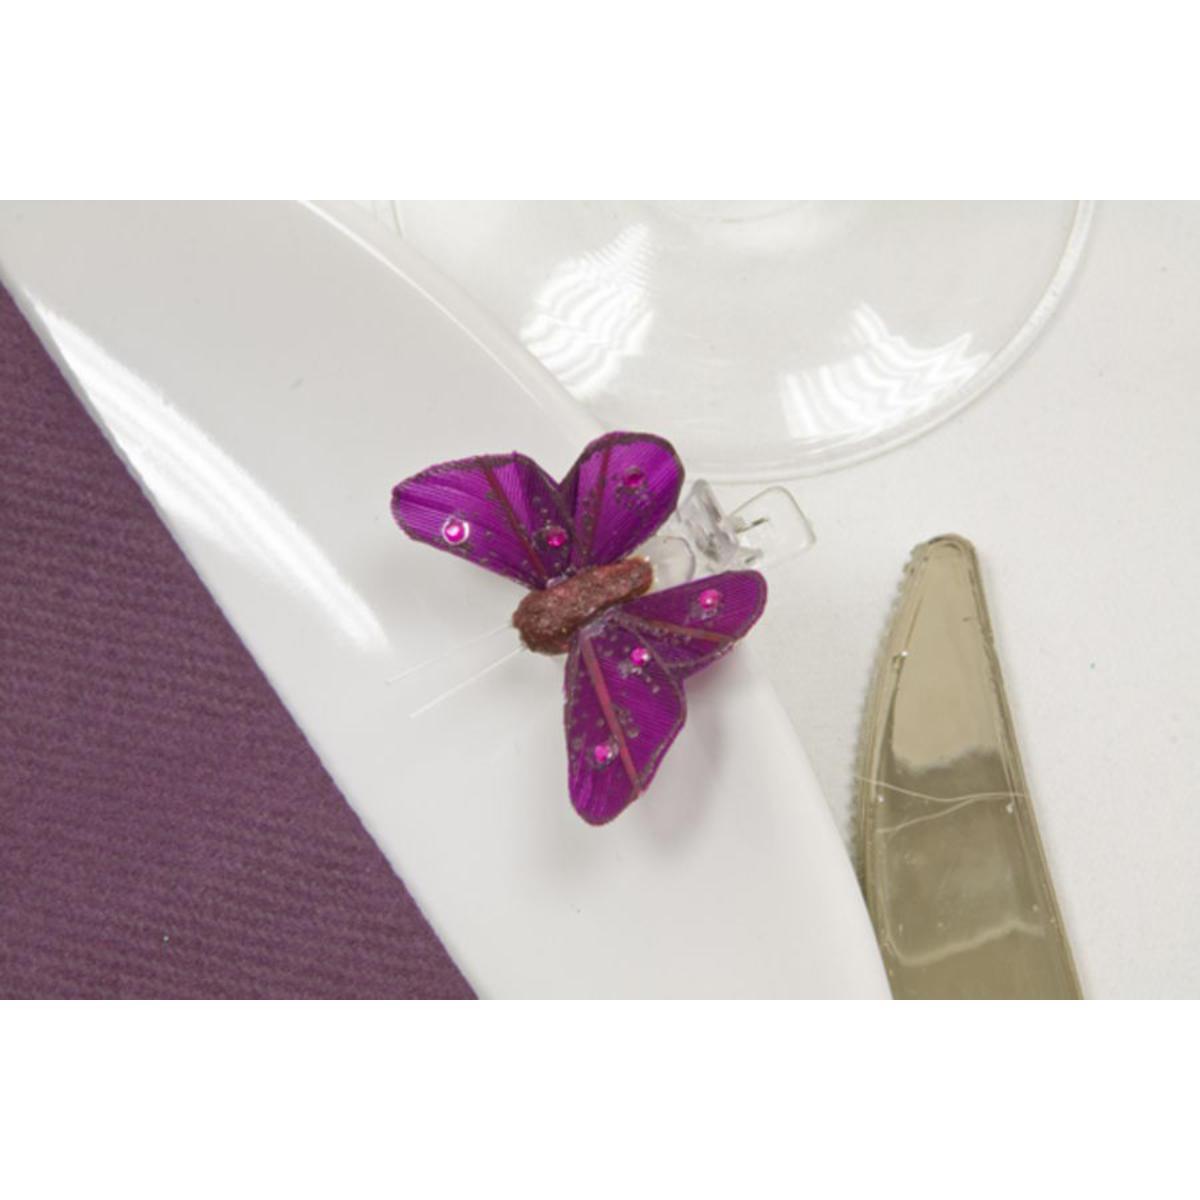 papillon sur pince + strASSIETTES x 4 (2,7 x 3,5cm) bordeaux